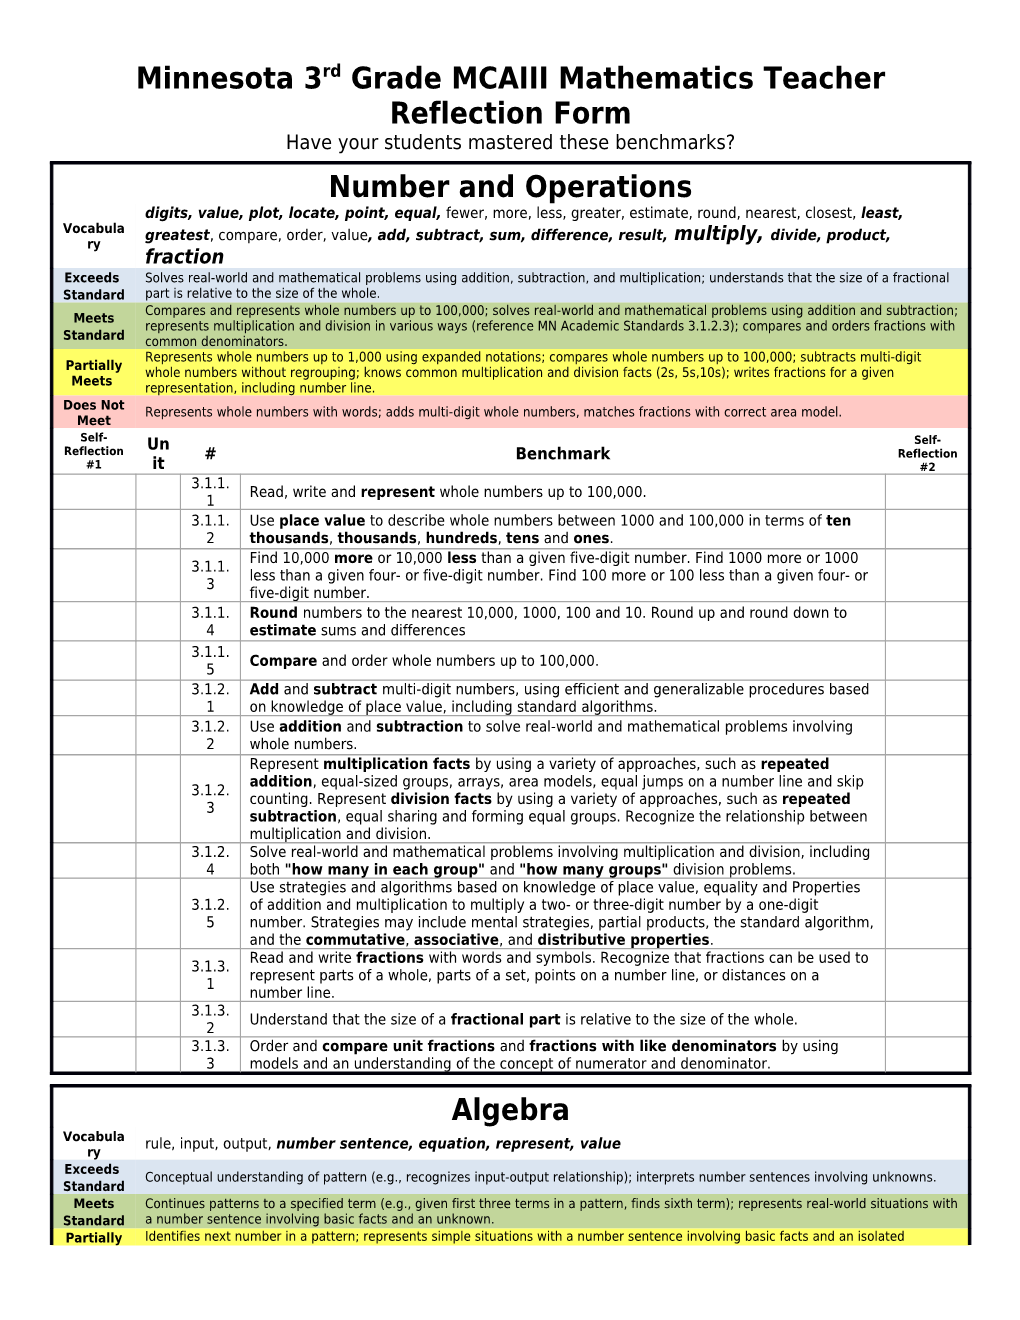 Minnesota 3Rd Grade MCAIII Mathematics Teacher Reflection Form